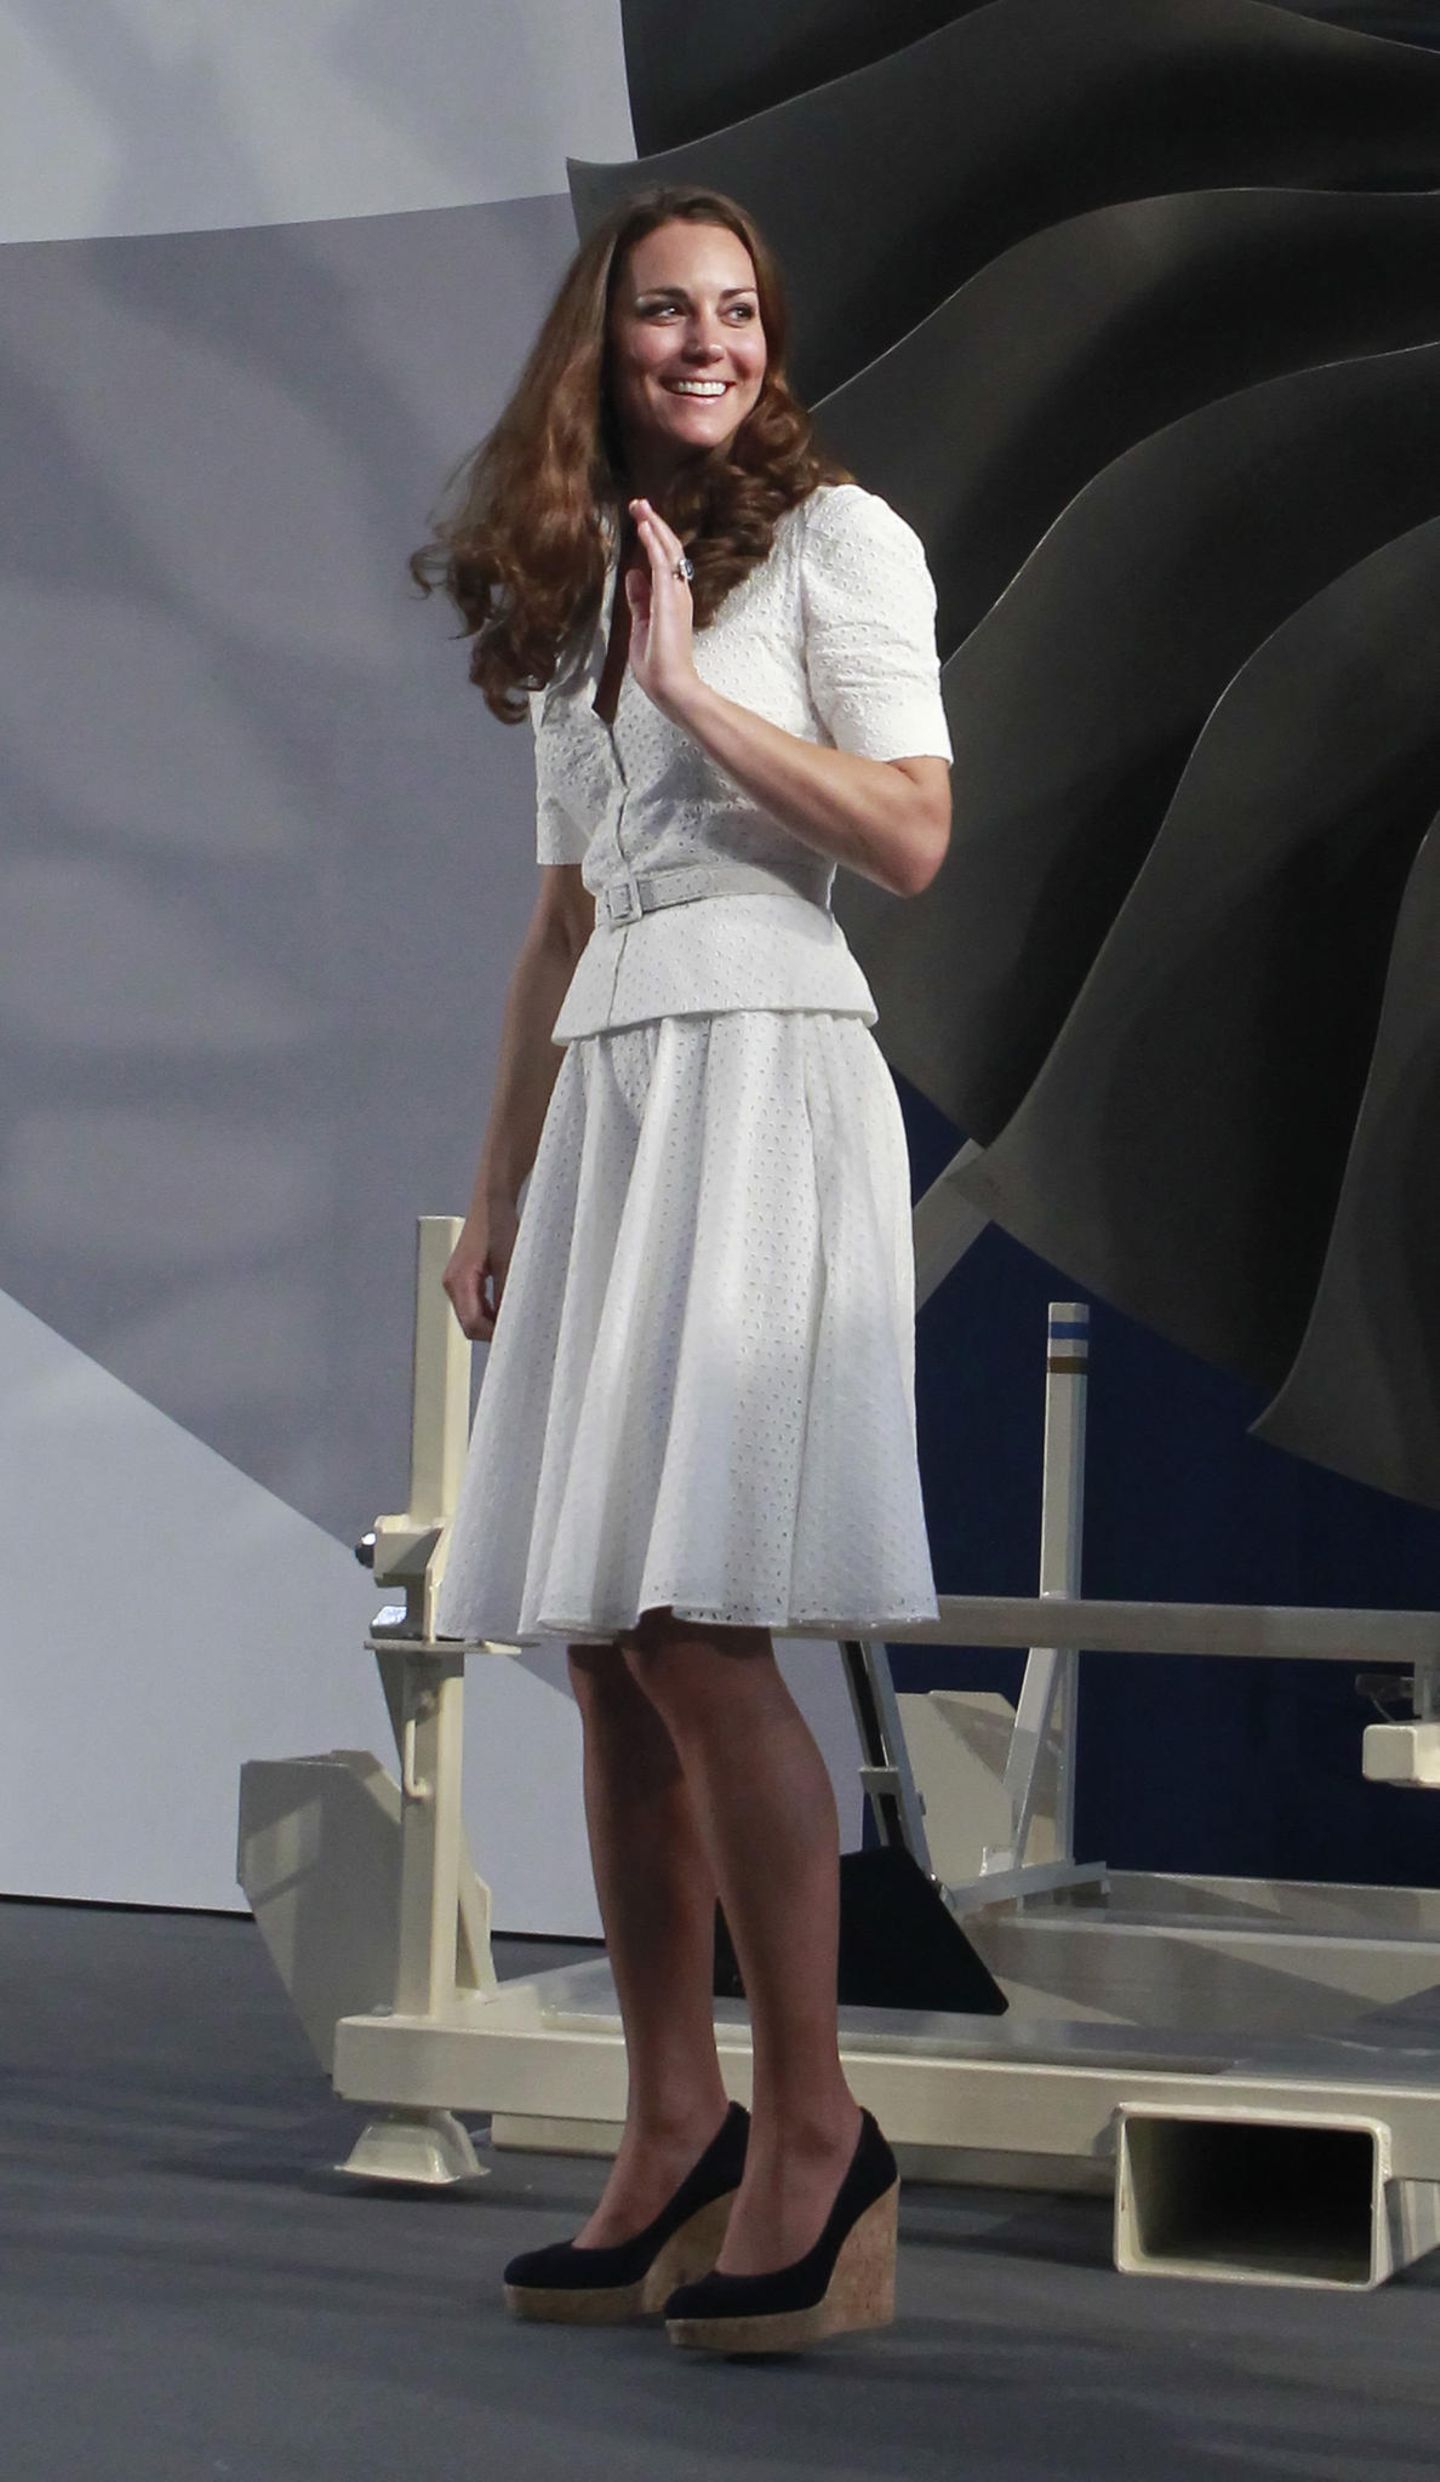 Schuhe der Royals: Herzogin Kate winkt